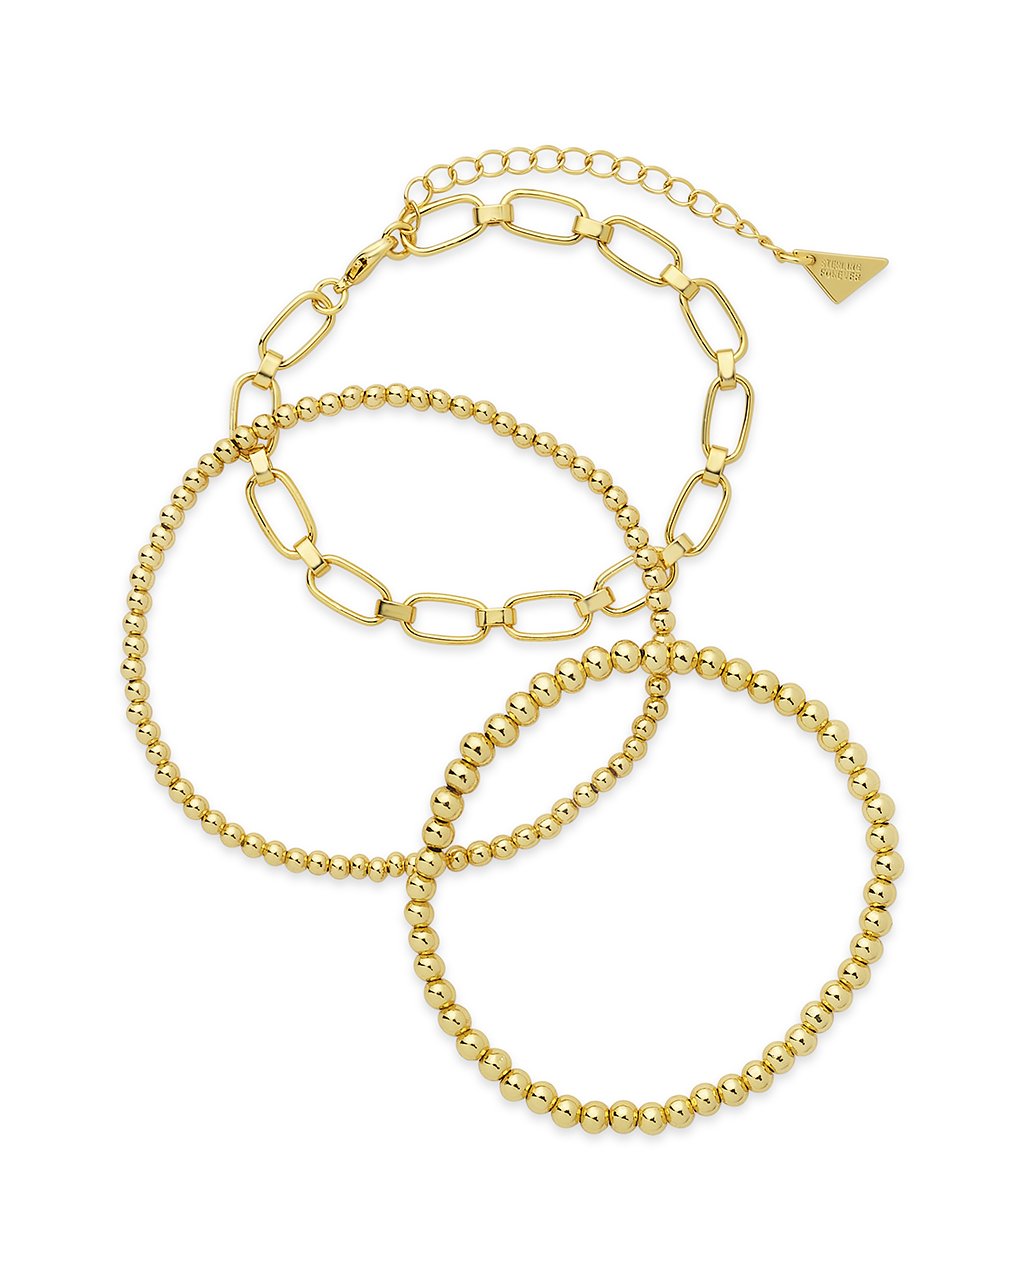 Chain & Bead Bracelet Set of 3 Bracelet Sterling Forever Gold 